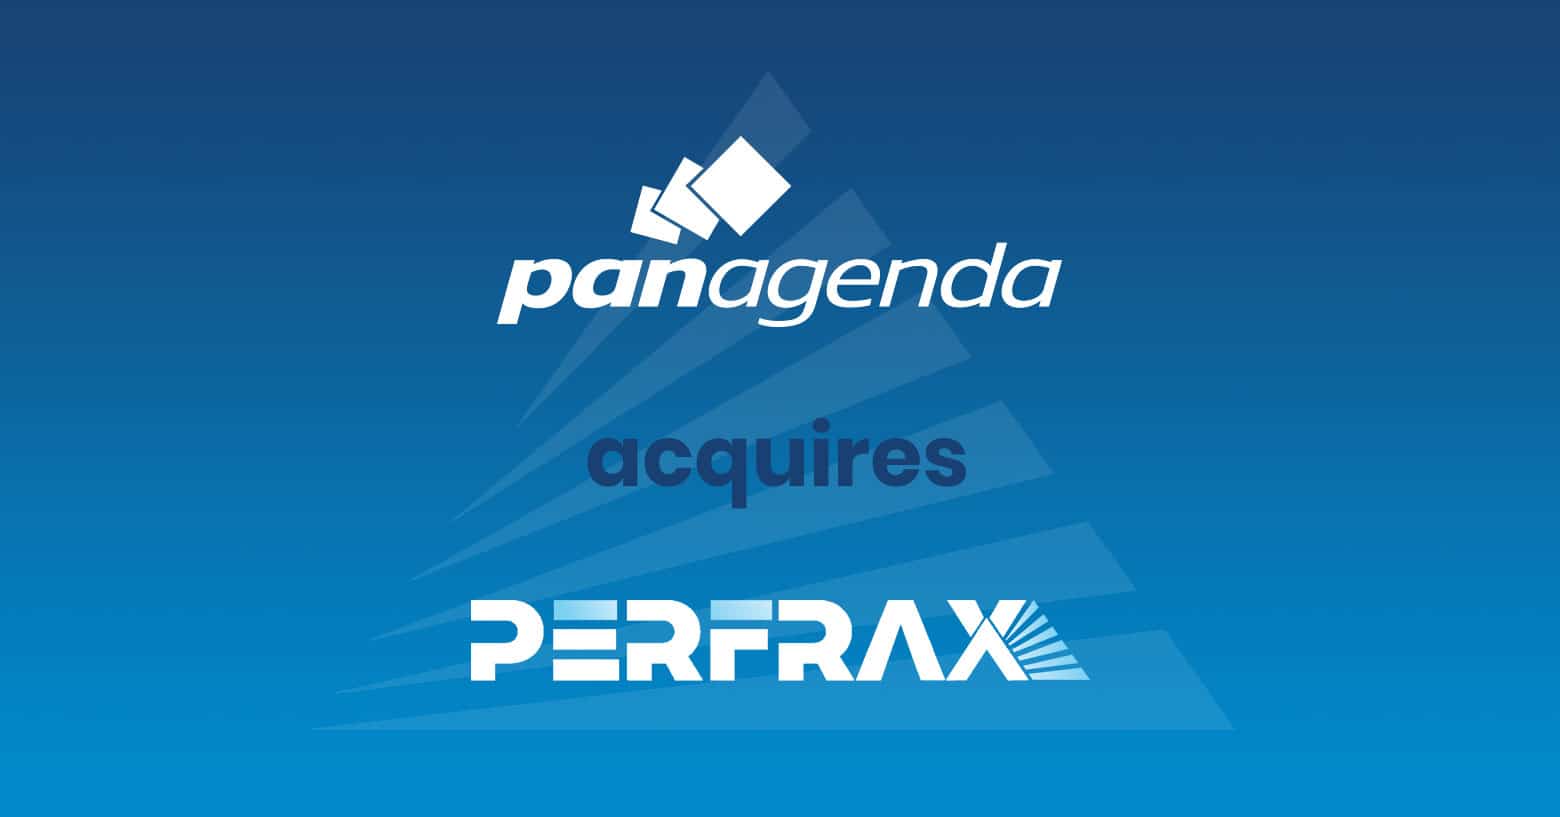 panagenda erwirbt Perfrax: Entwickler von bahnbrechendem User Experience Monitoring und Microsoft Teams Call Quality Analytics